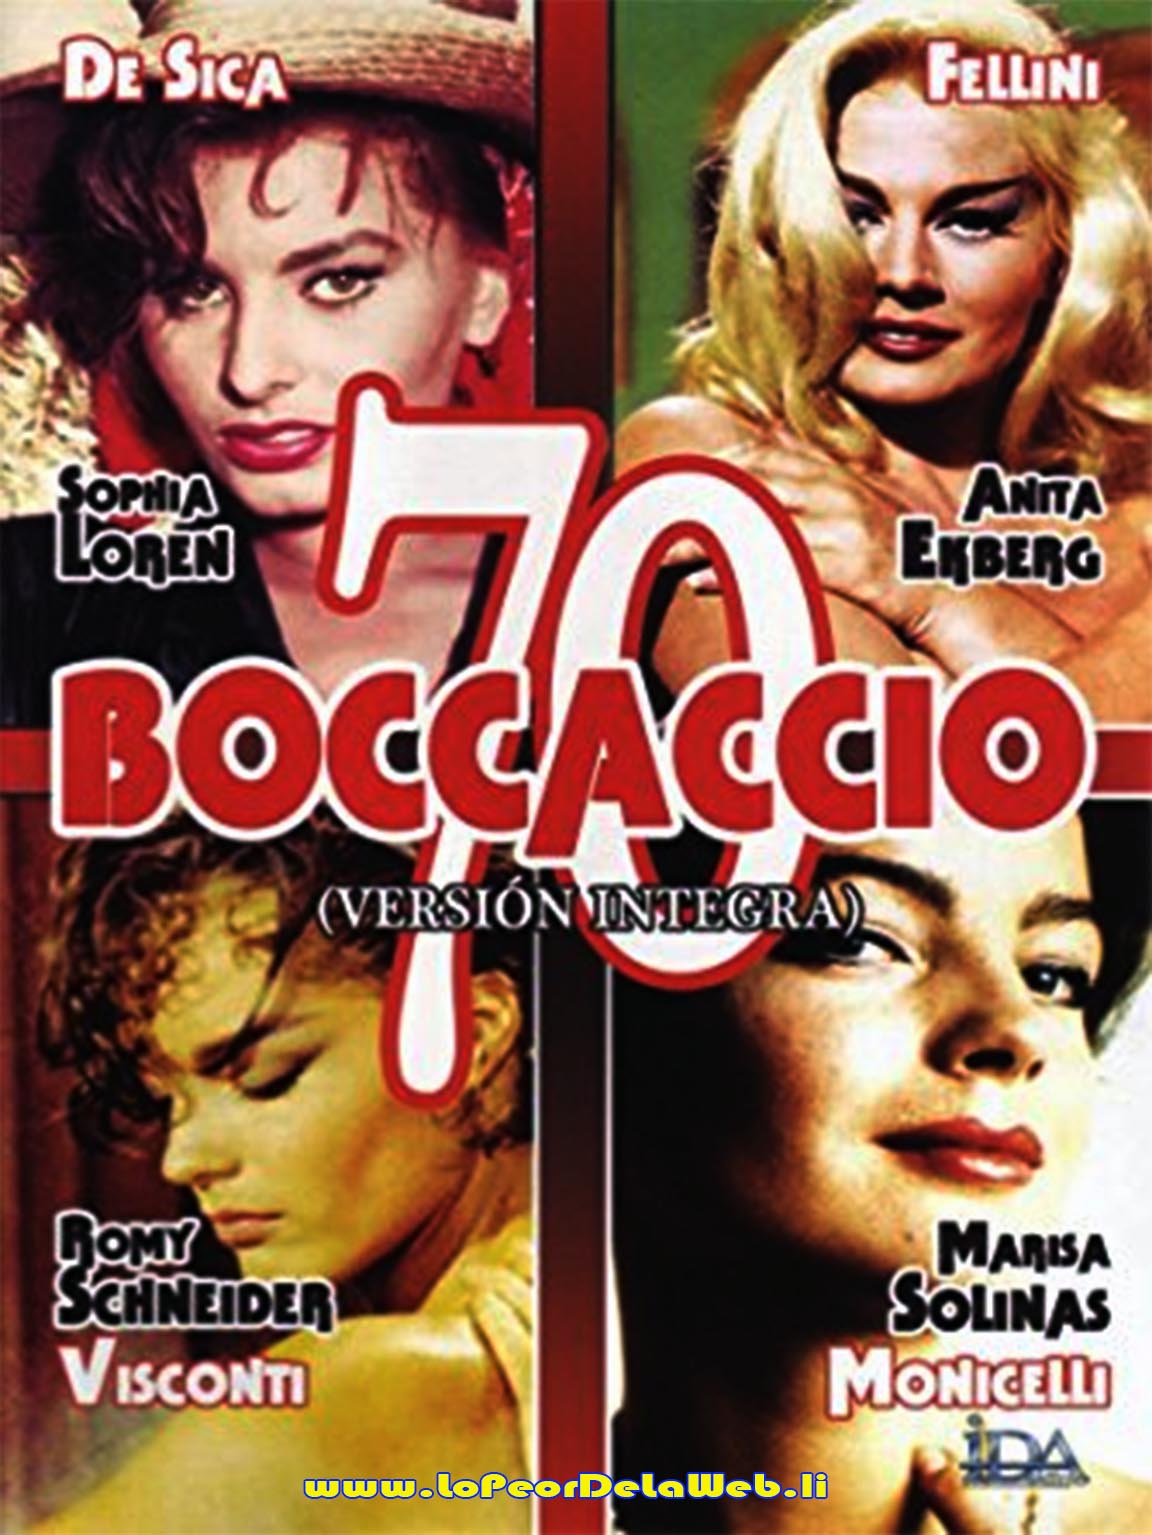 Boccaccio '70 (1962 - Sophia Loren)